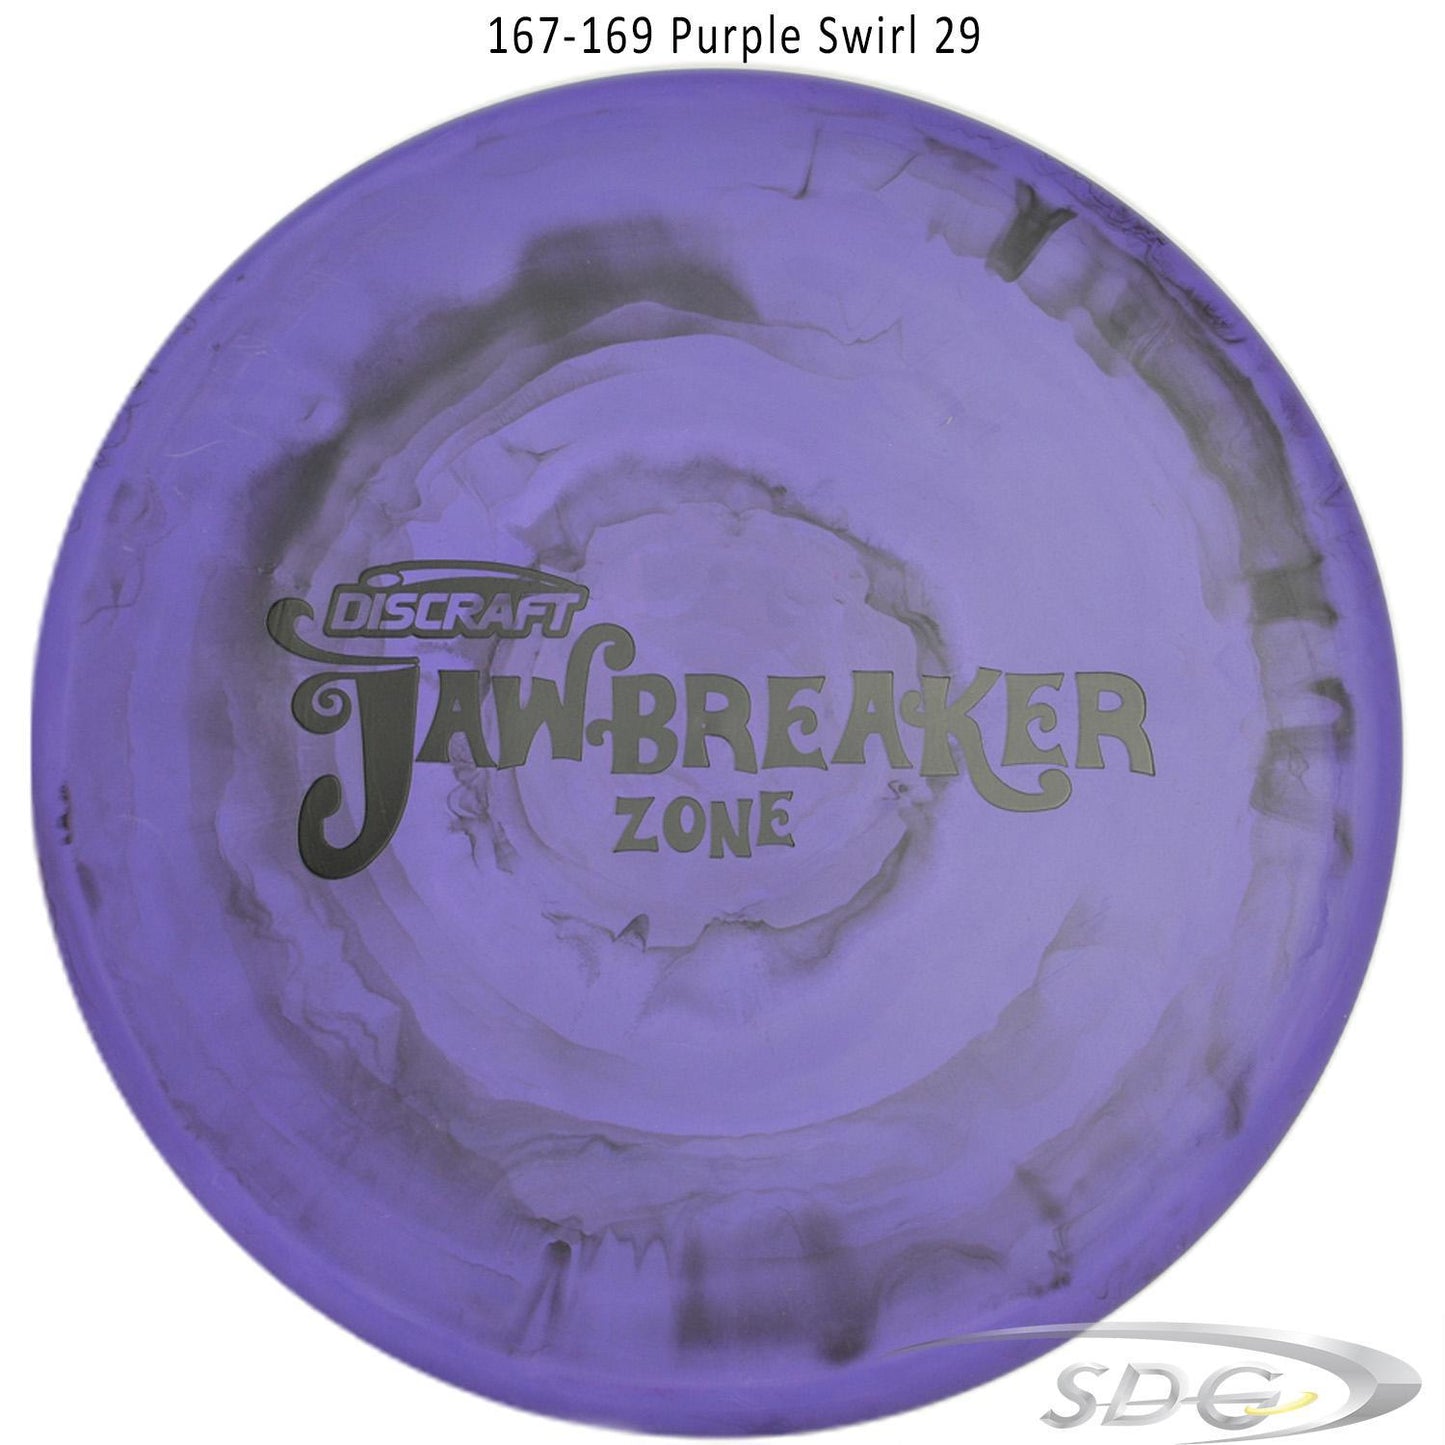 discraft-jawbreaker-zone-disc-golf-putter 167-169 Purple Swirl 29